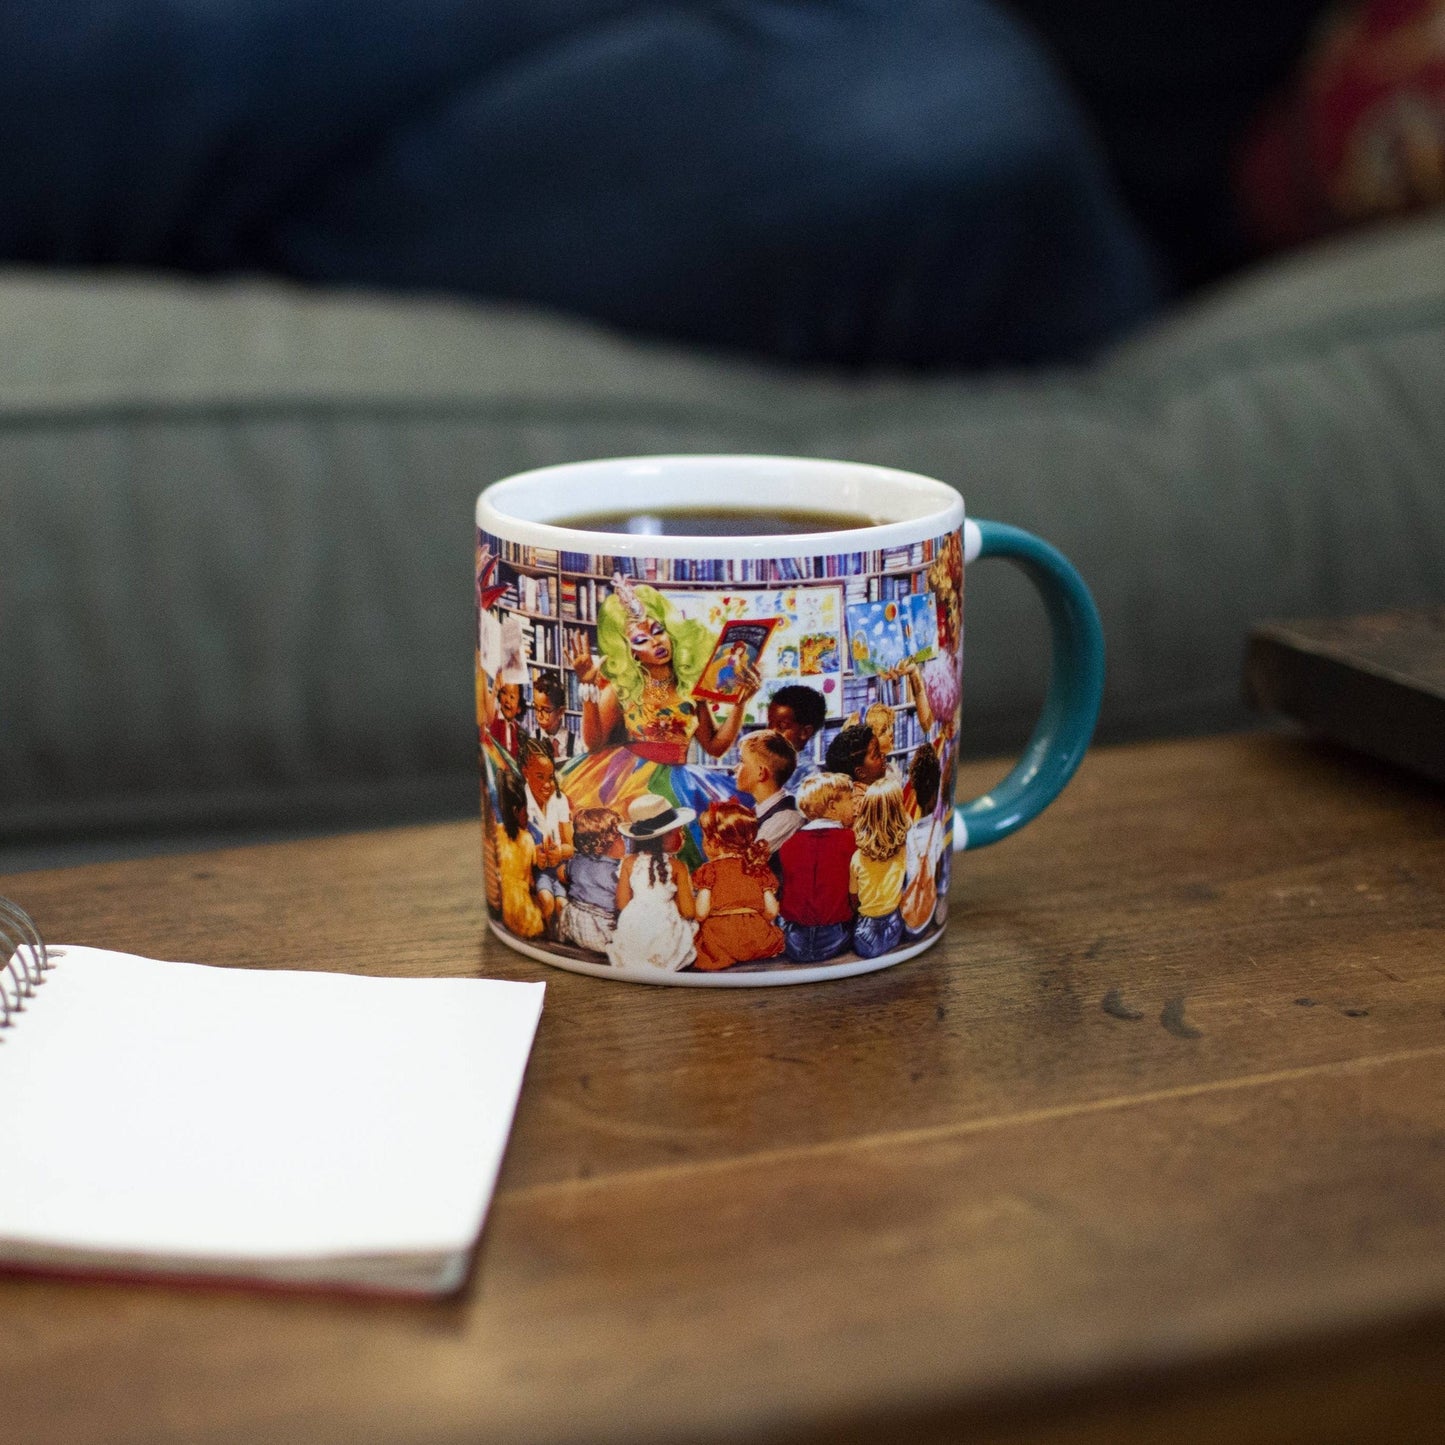 Drag Story Hour Mug | Queens Ceramic Tea Coffee Cup | 14oz